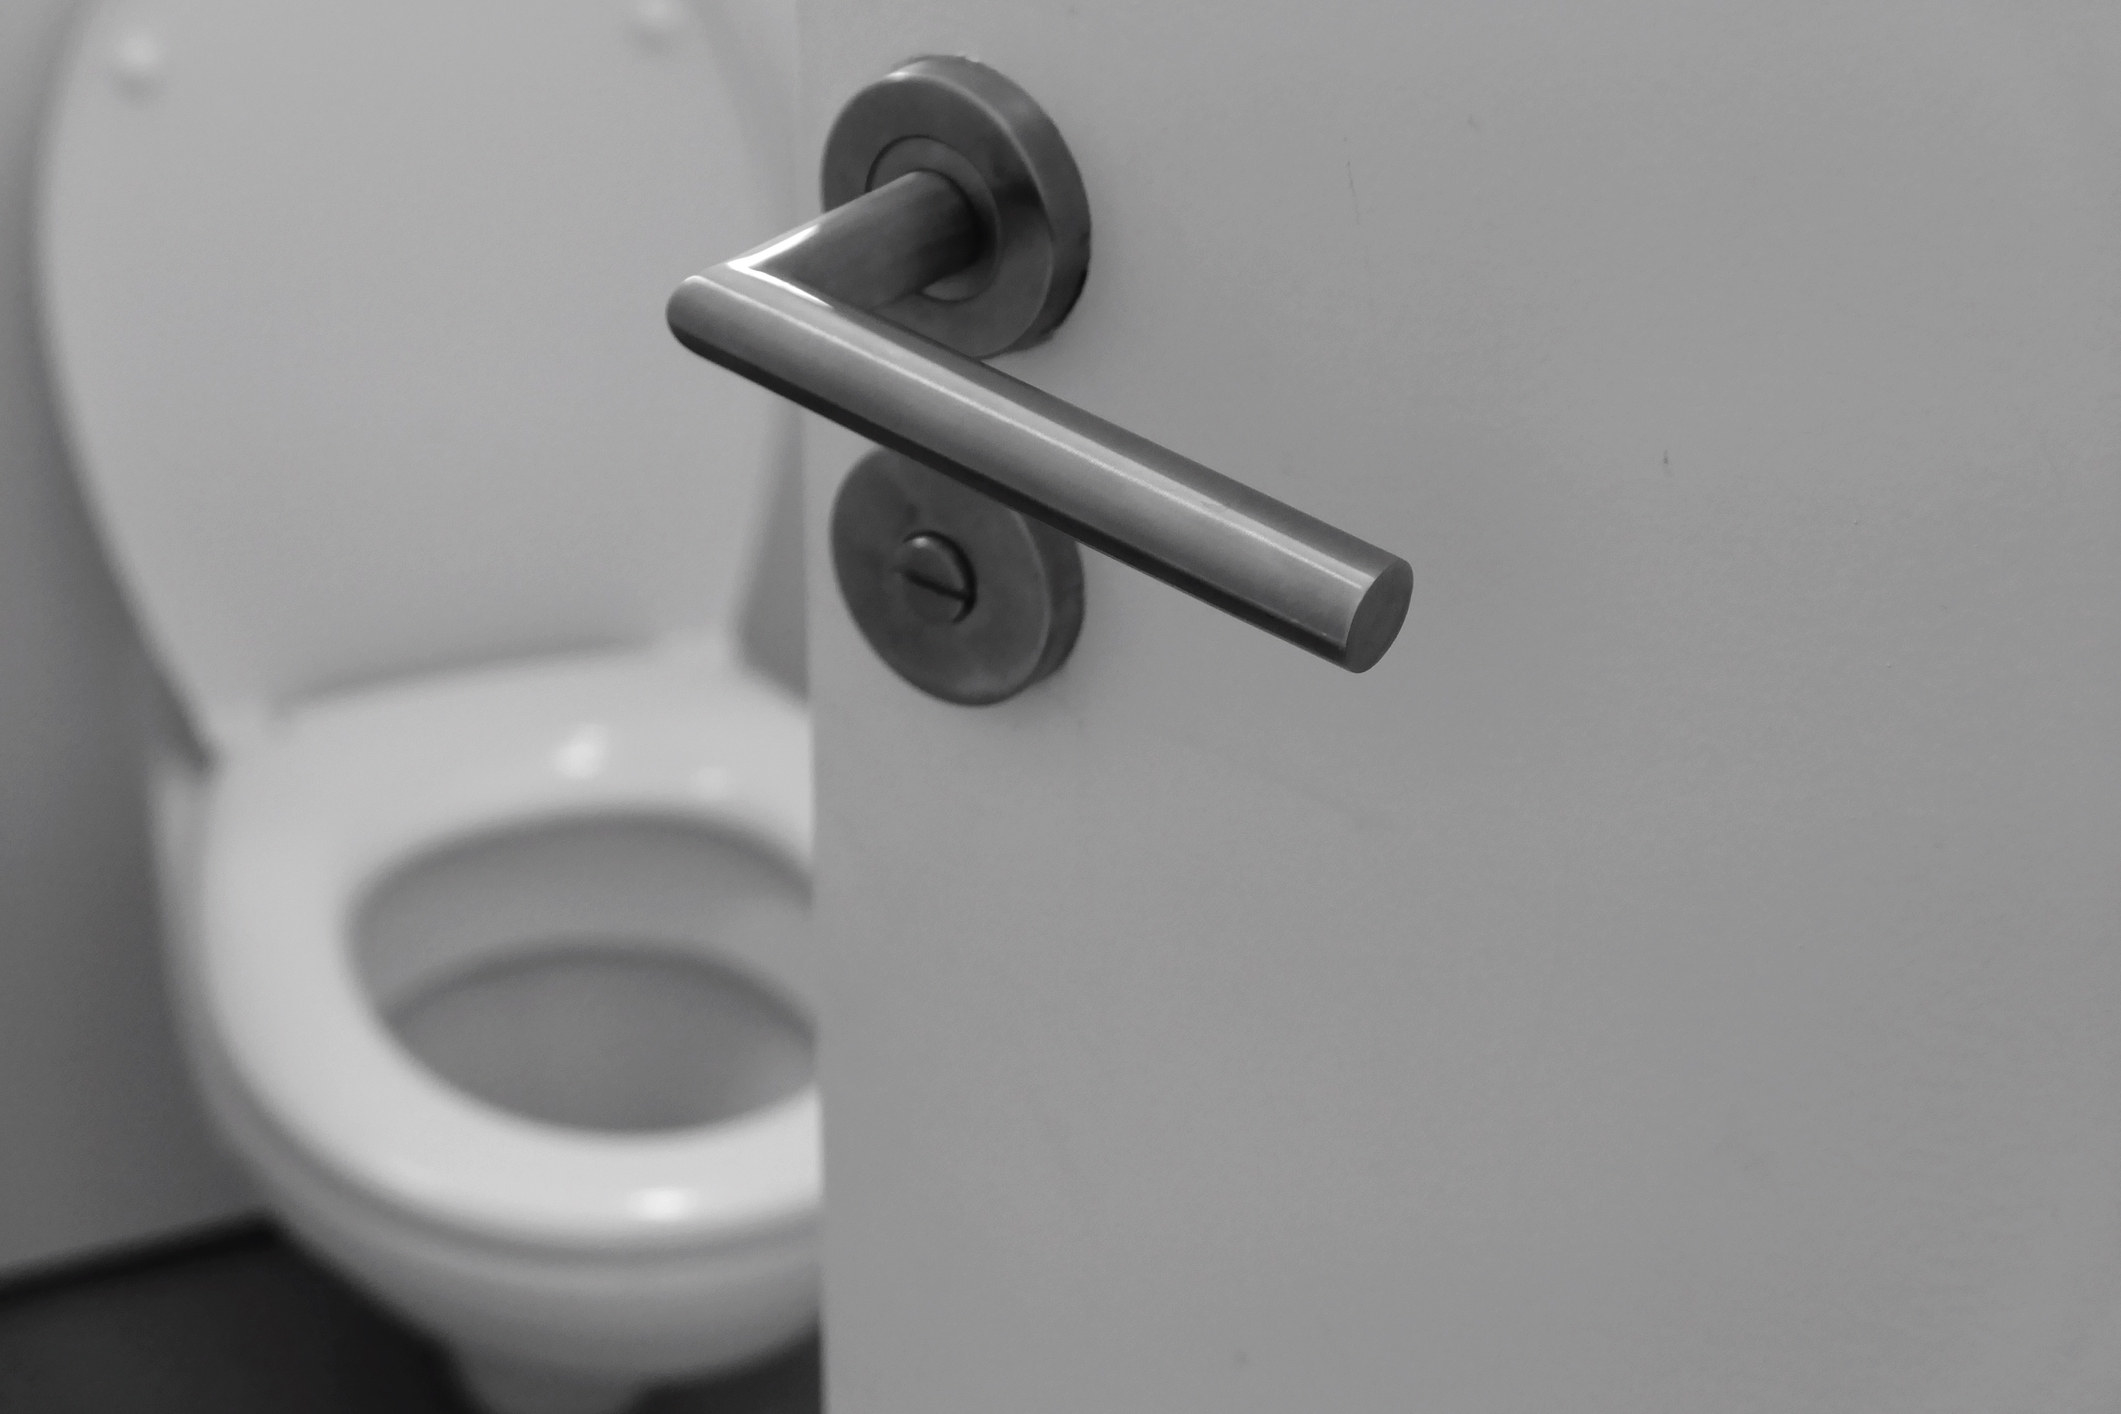 A bathroom door creaked open, revealing a toilet